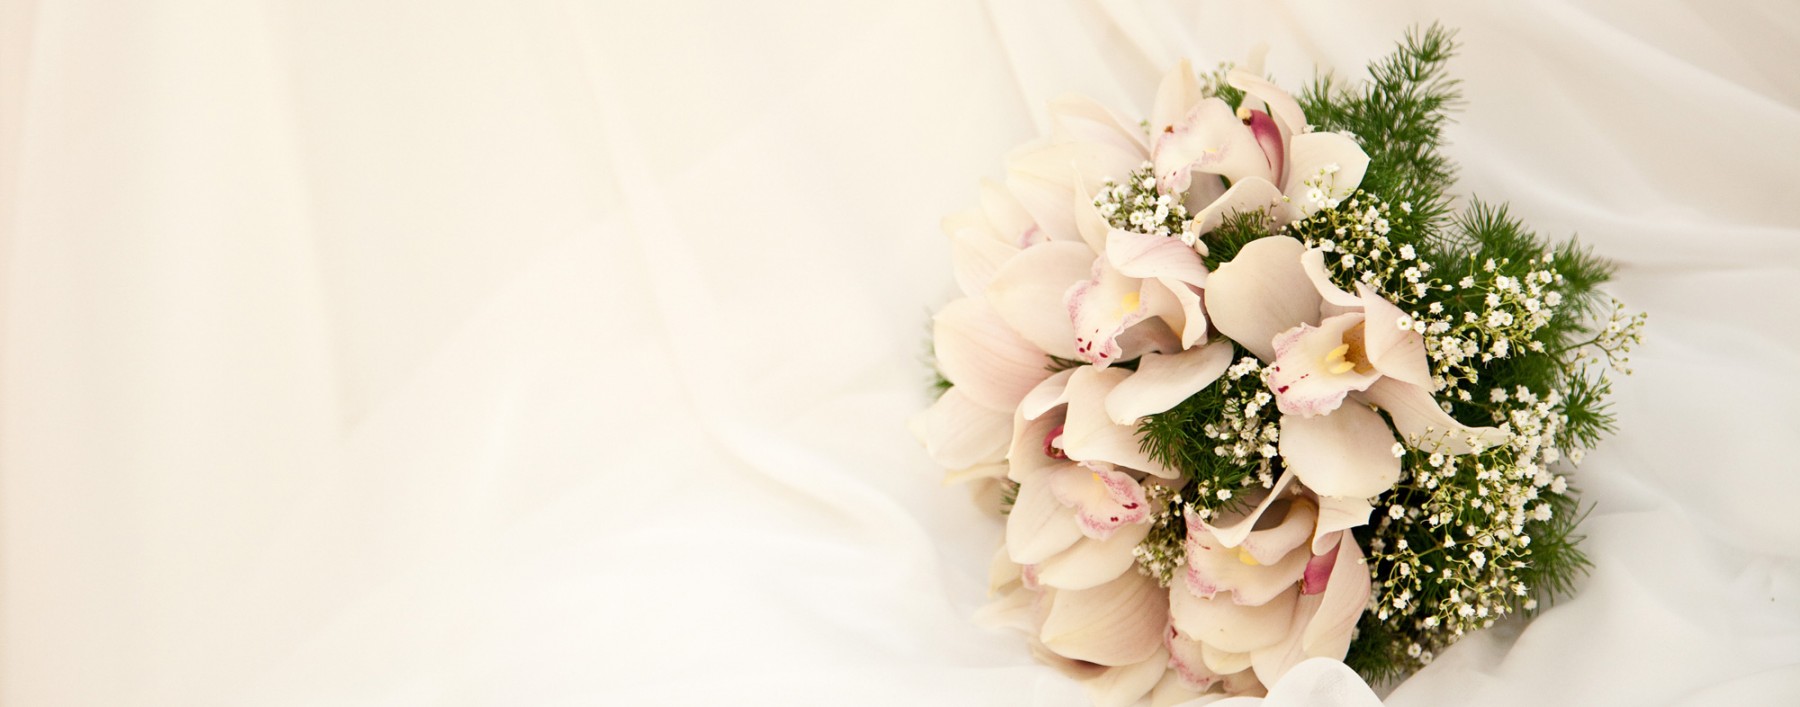 wedding_bouquet_514441